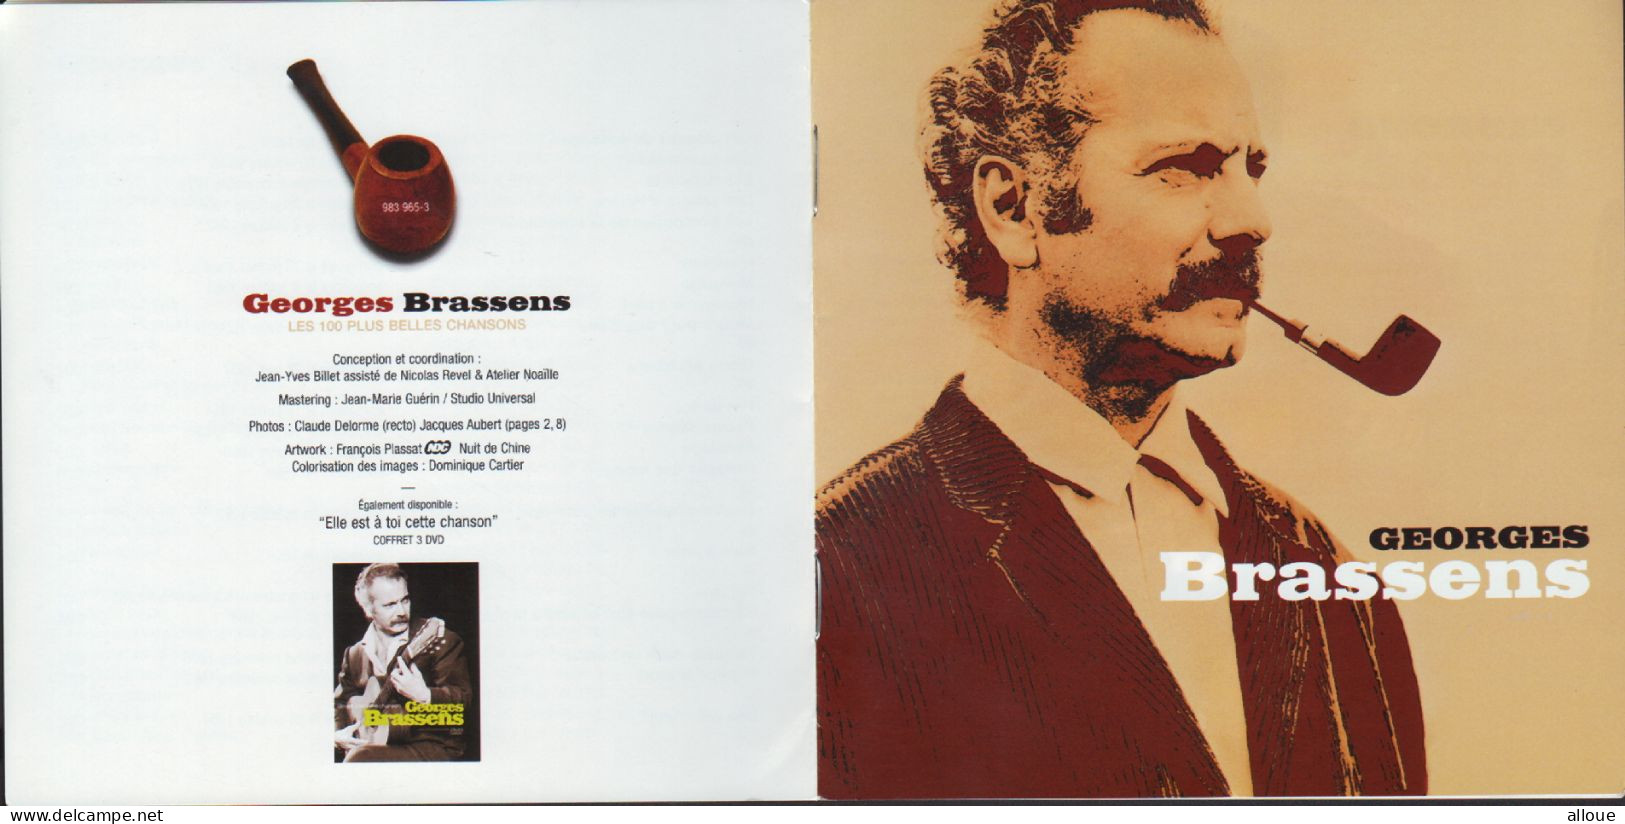 GEORGES BRASSENS  - COFFRET 5 CDS DANS UNE BOITE EN FER - LES 100 PLUS BELLES CHANSONS DE BRASSENS (2006) - Other - French Music